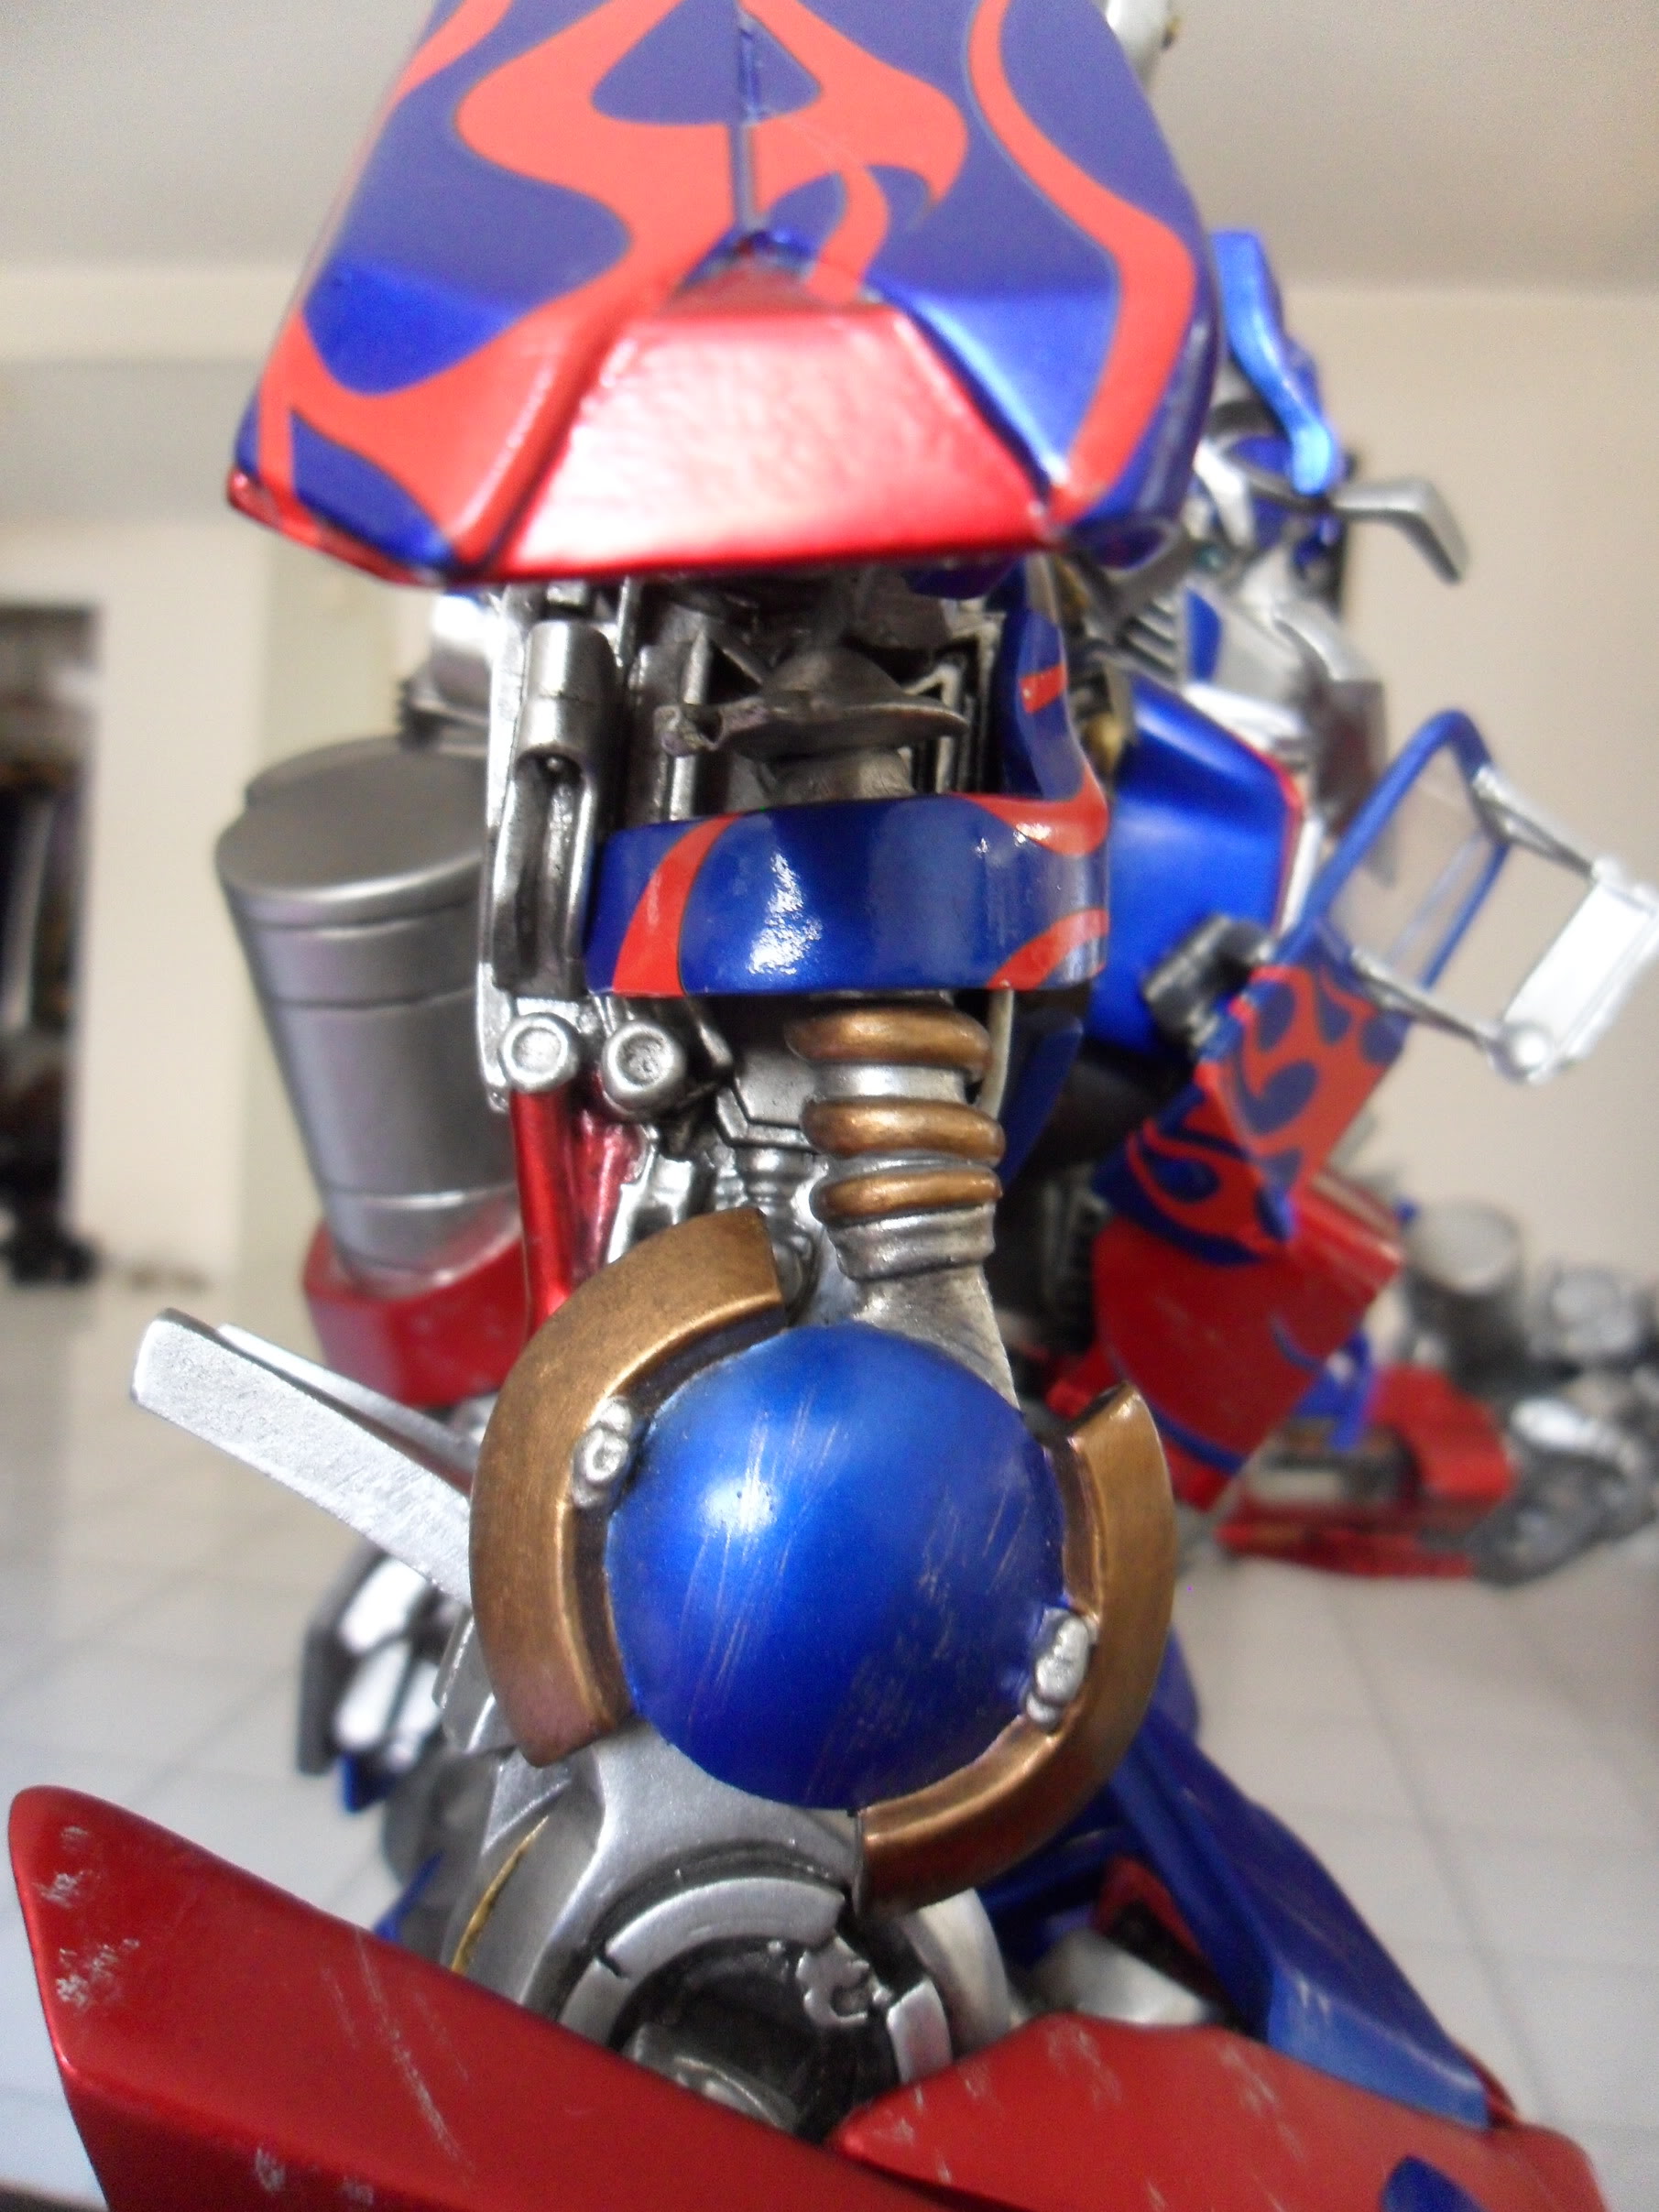 [Sideshow] Transformers - Optimus Prime Maquette - FOTOS OFICIAIS!!! Pág. 02 - Página 5 SAM_1268